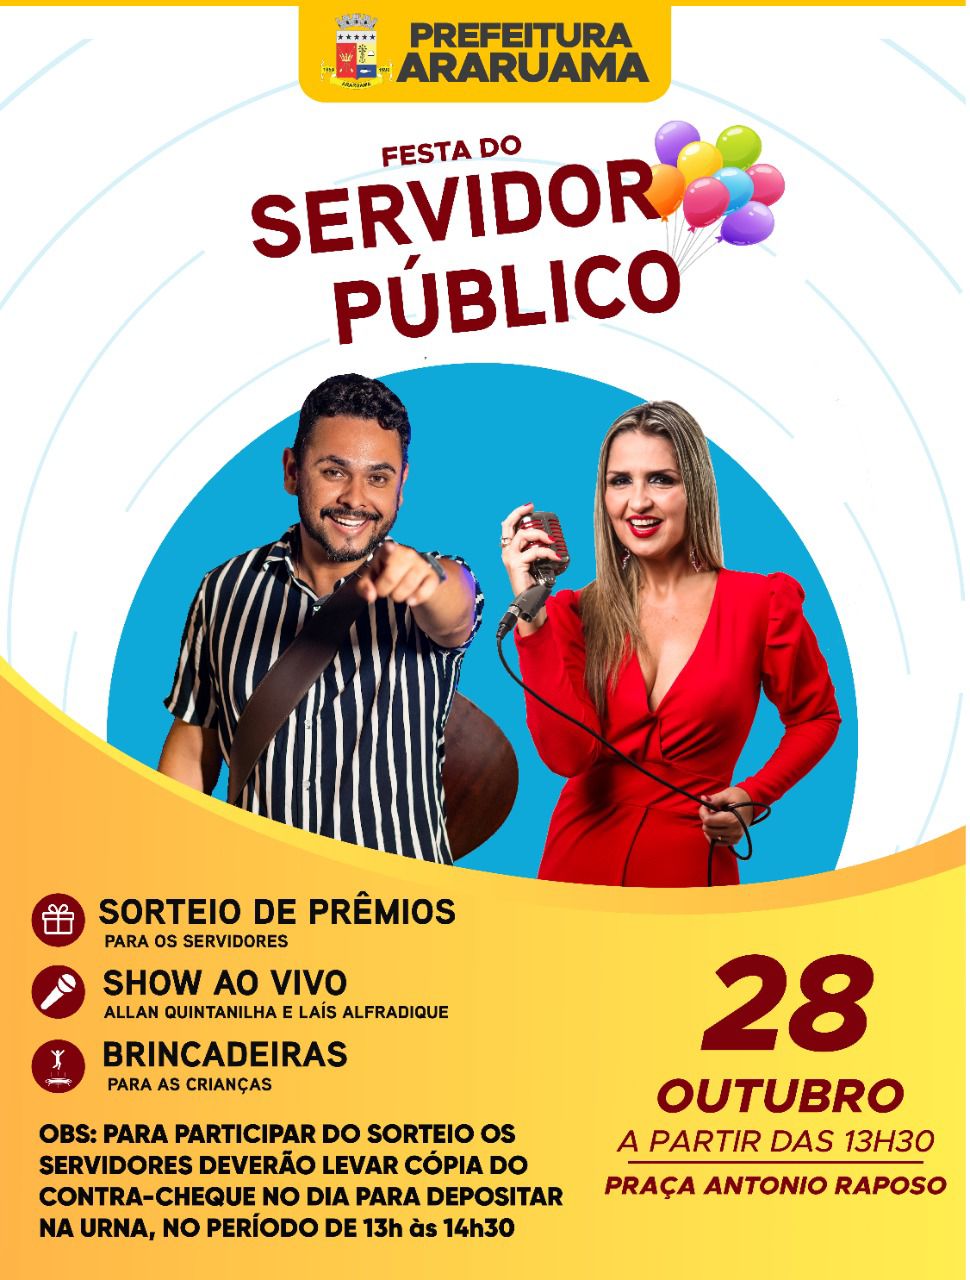 Prefeitura de Araruama vai realizar a tradicional “Festa do Servidor Público”, na praça Menino João Hélio